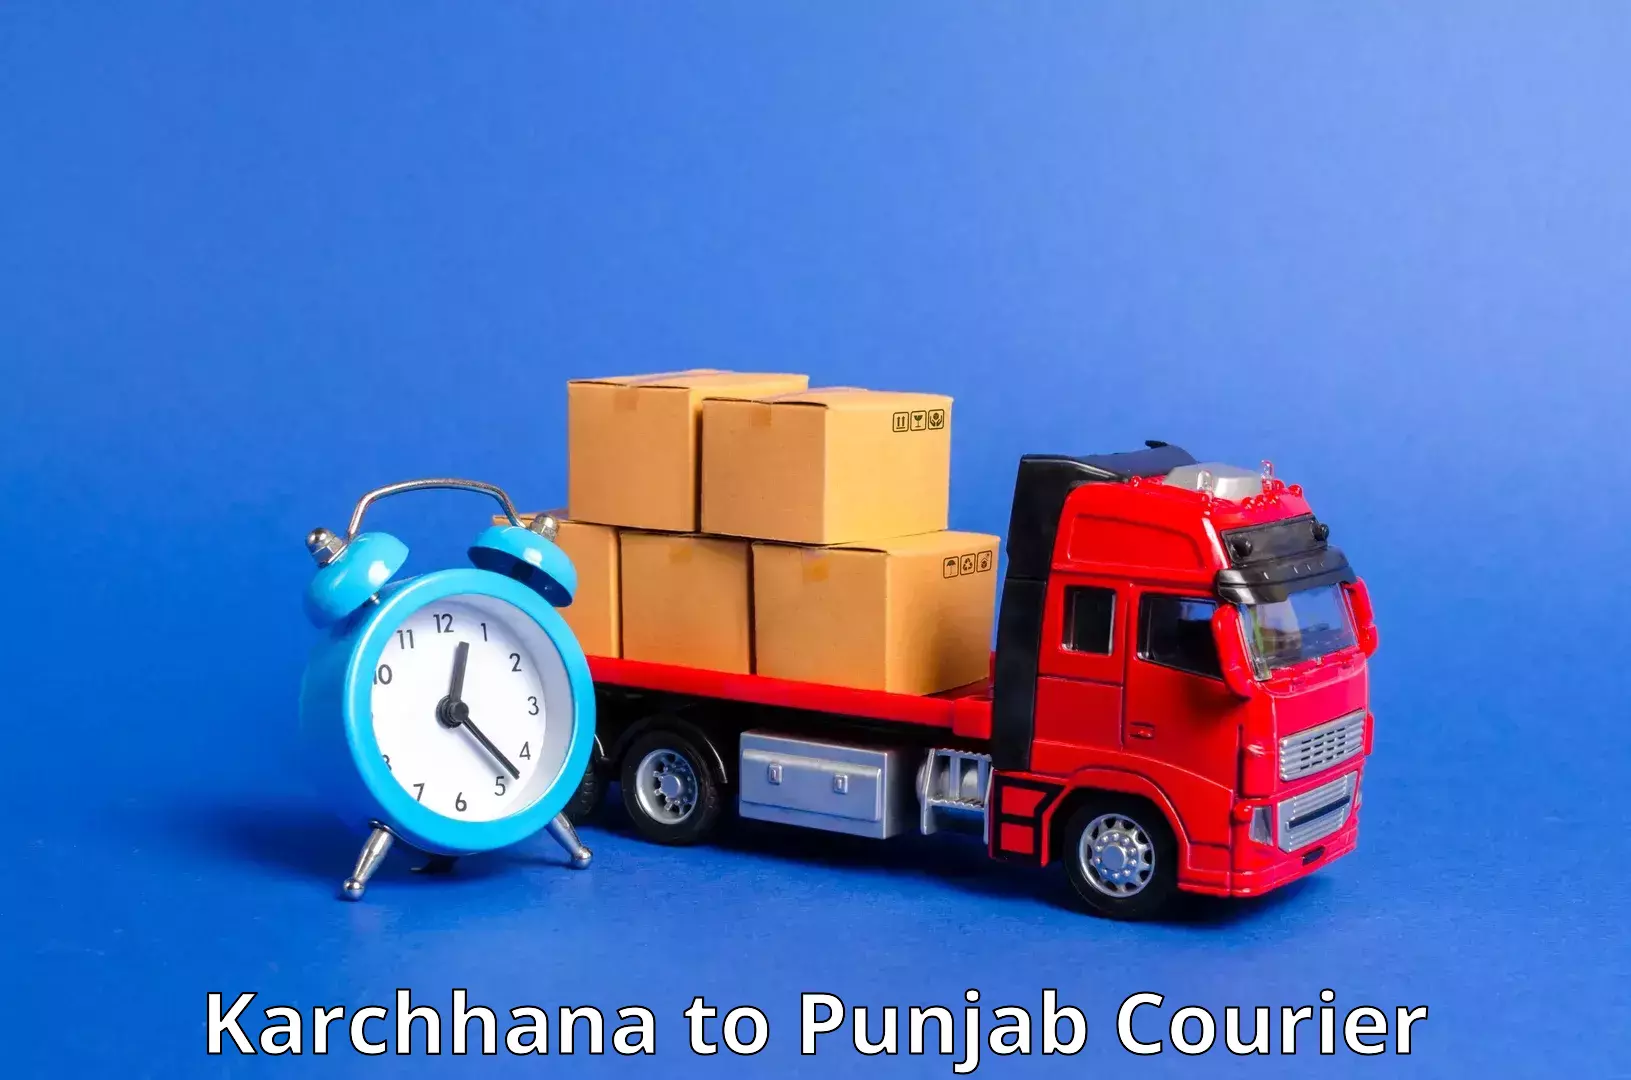 Cash on delivery service Karchhana to Kotkapura